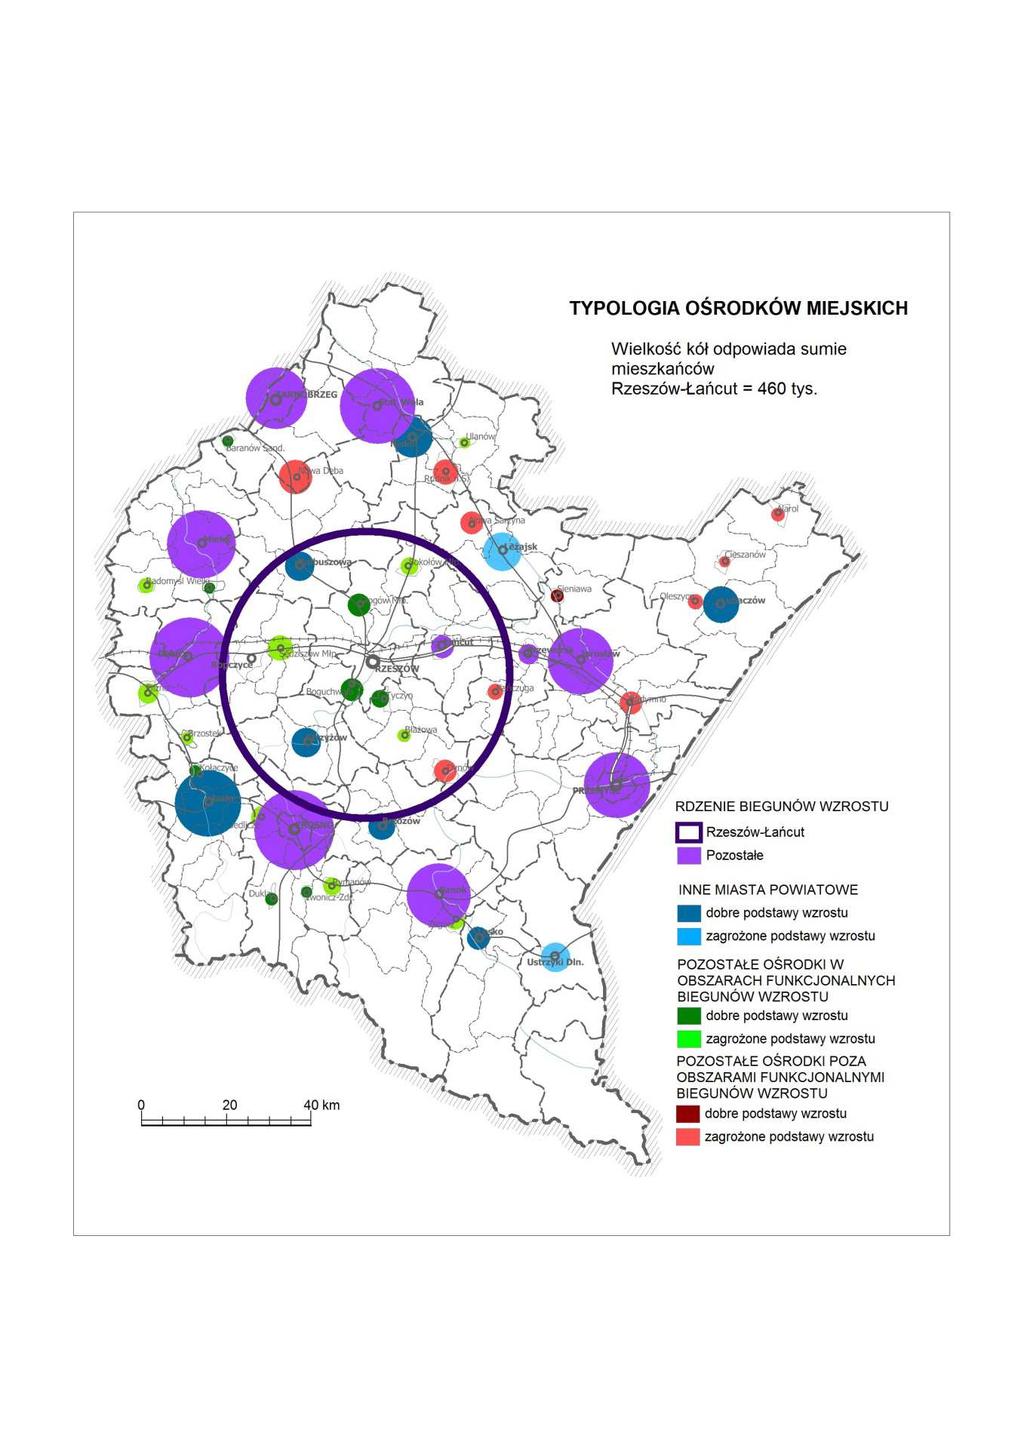 Cechy sieci osadniczej województwa Województwo podkarpackie jest regionem o niskim poziomie urbanizacji (41,4%). Na obszarze województwa zlokalizowanych jest 51 miast. Dominują miasta małe.